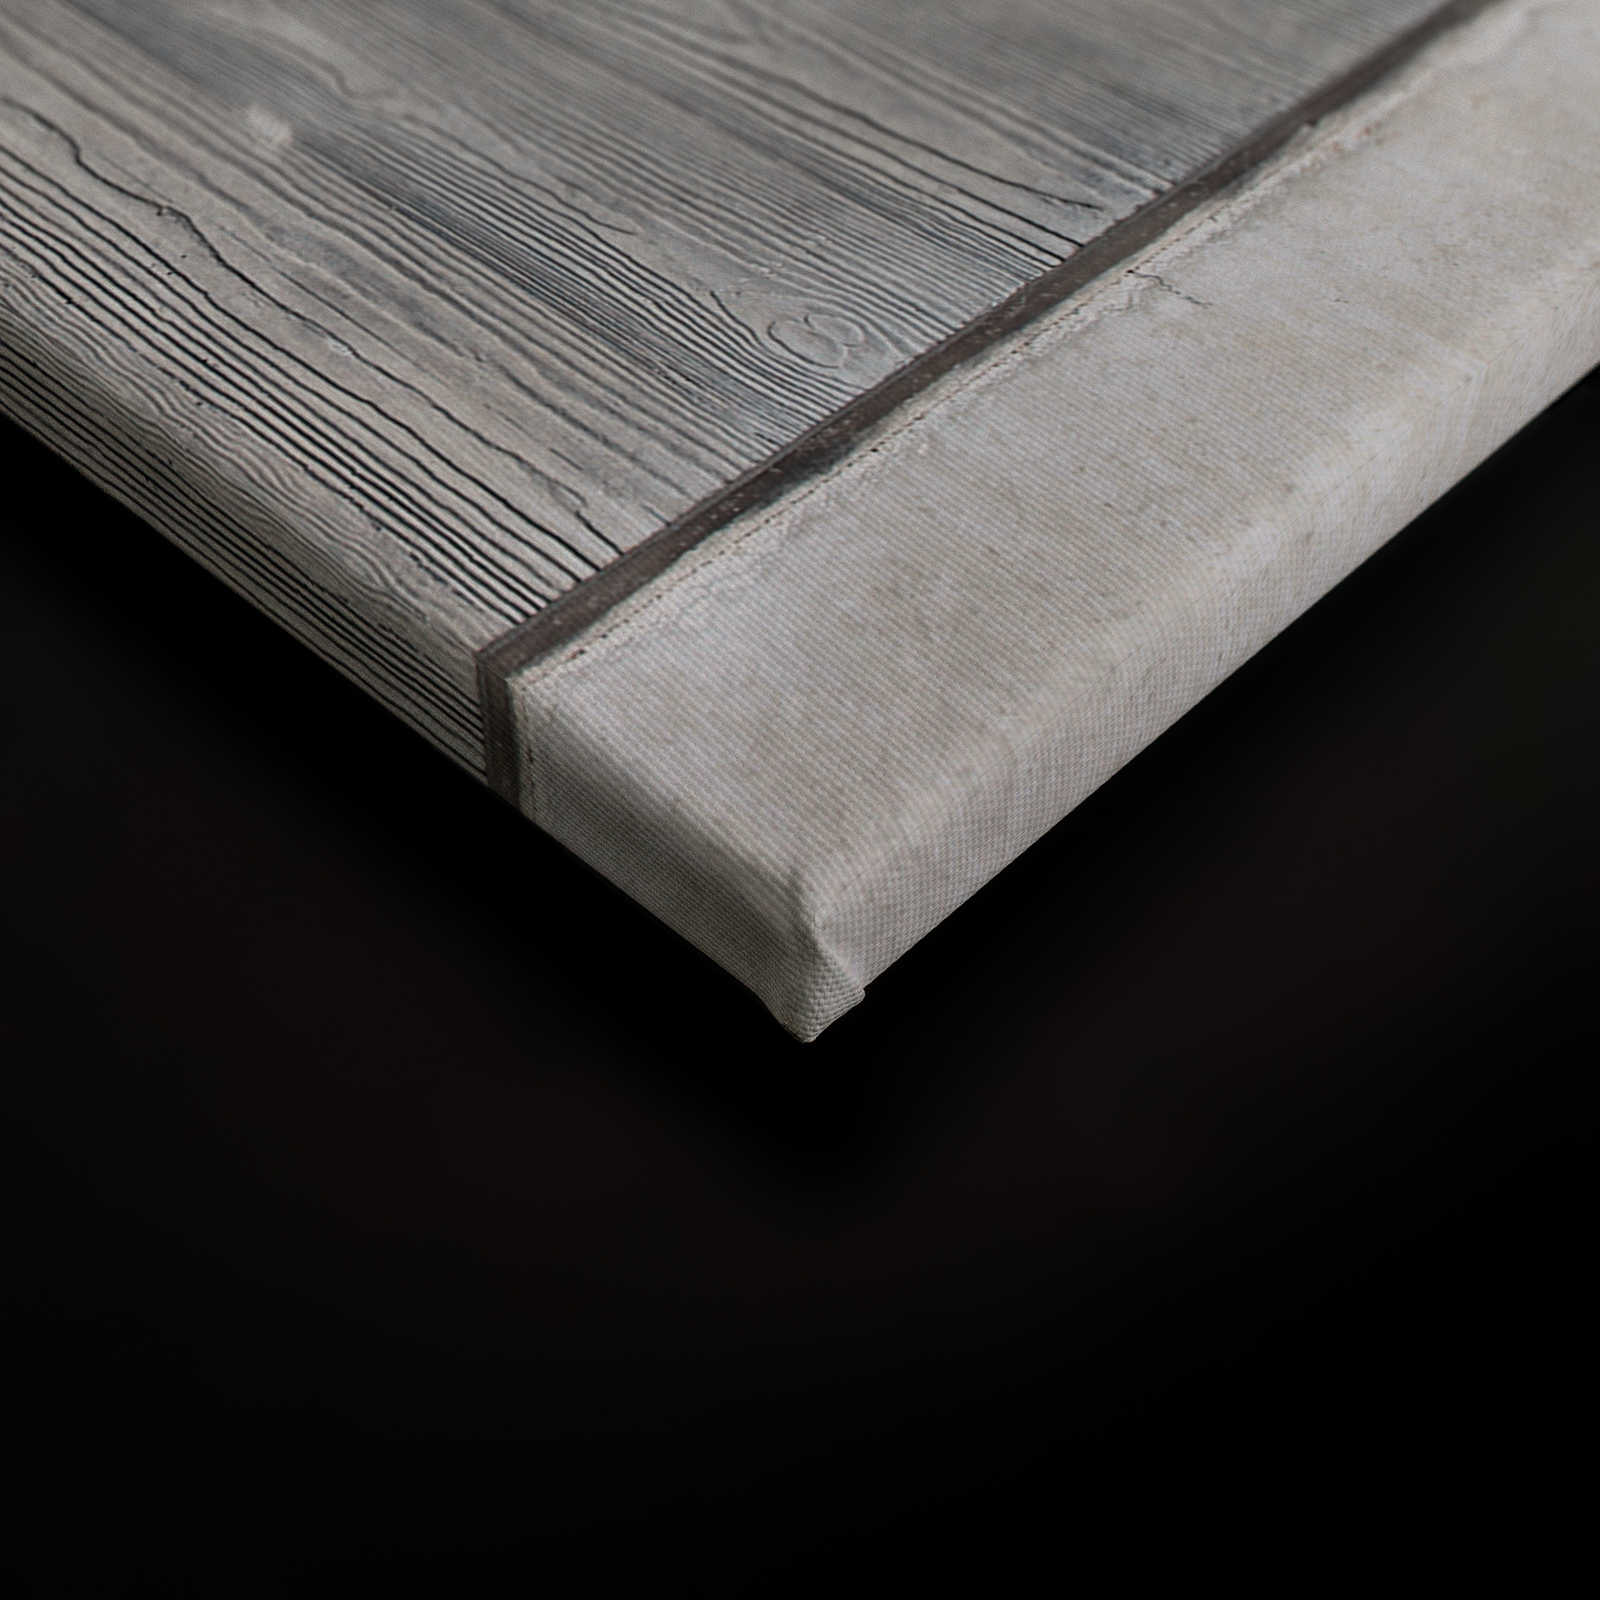             Cuadro de lienzo de losa de hormigón con encofrado de tablas y veta de madera - 1,20 m x 0,80 m
        